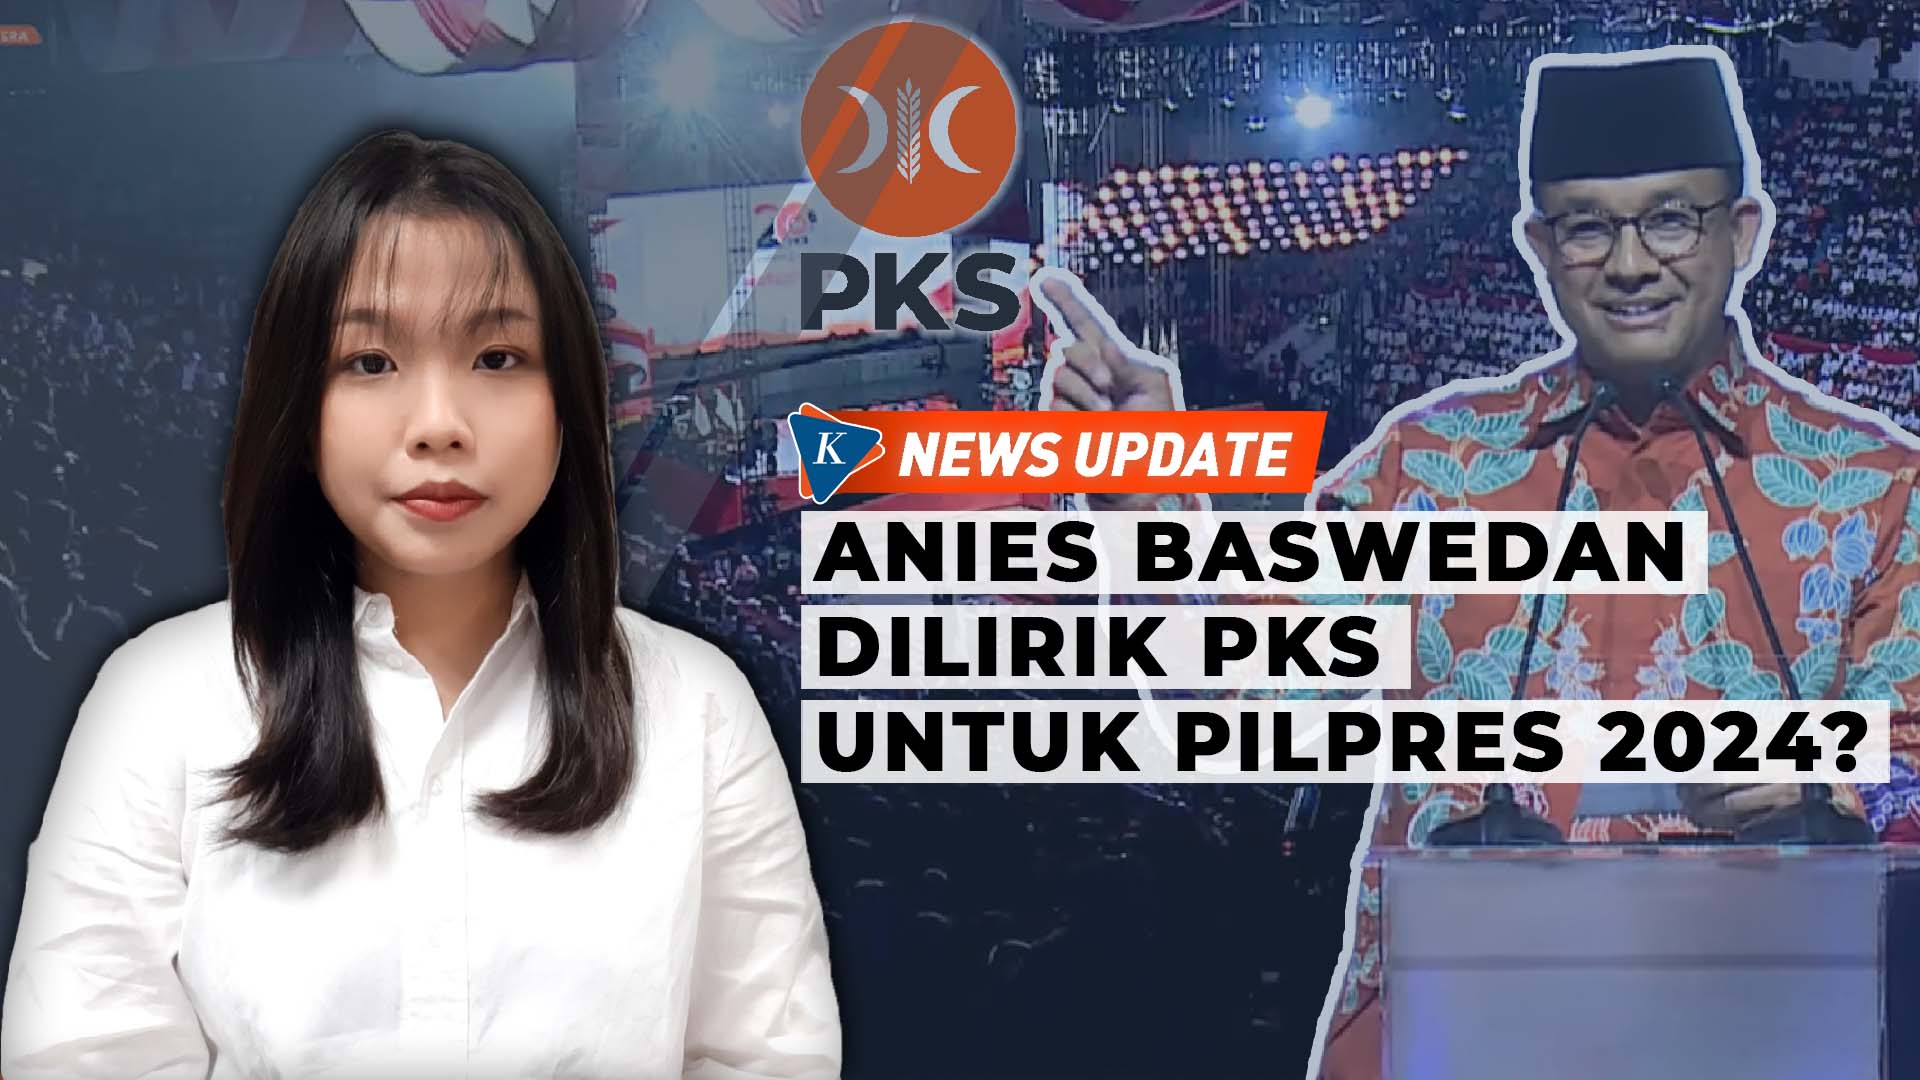 PKS Pertimbangkan Anies Baswedan, Sandiaga Uno, hingga AHY untuk Pilpres 2024